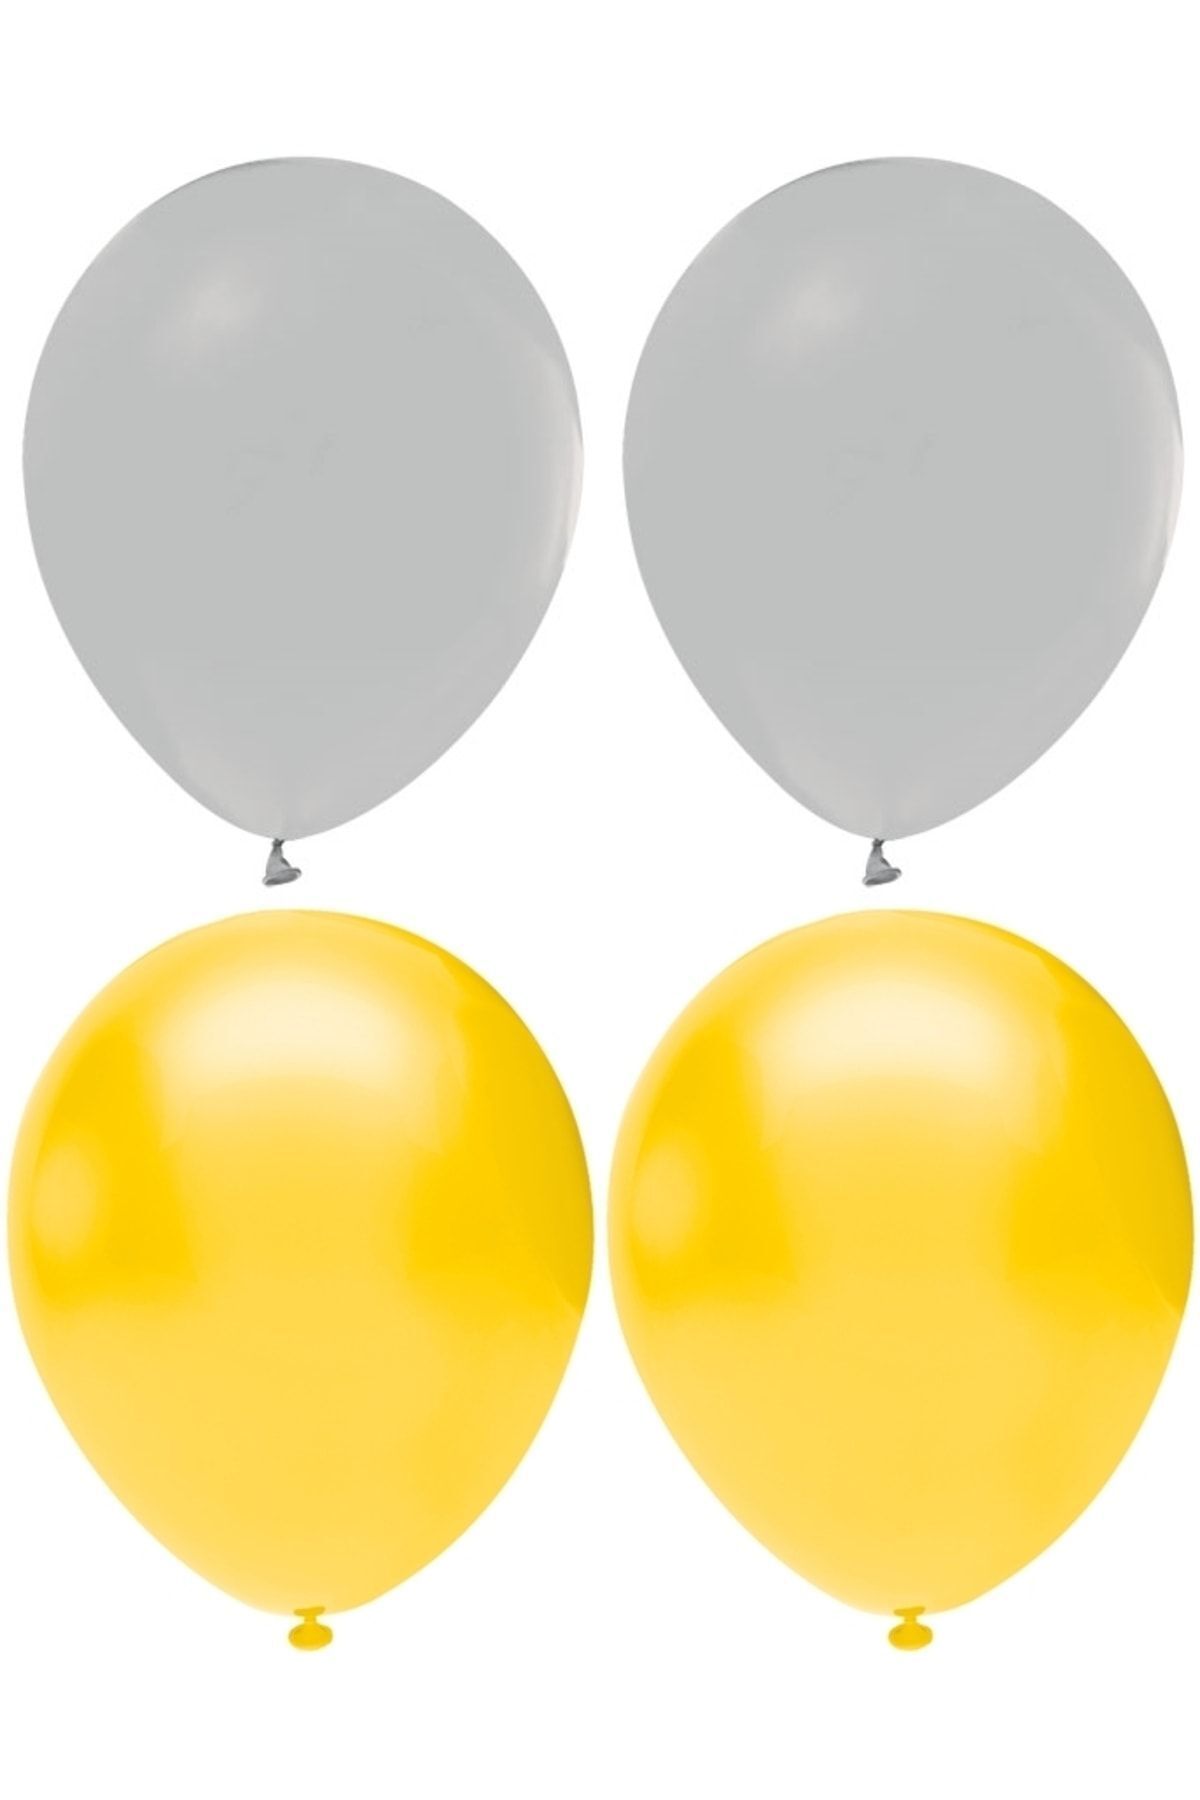 HKNYS Sarı Ve Gri Renk Karışık Lateks Pastel Balon 70 Adet